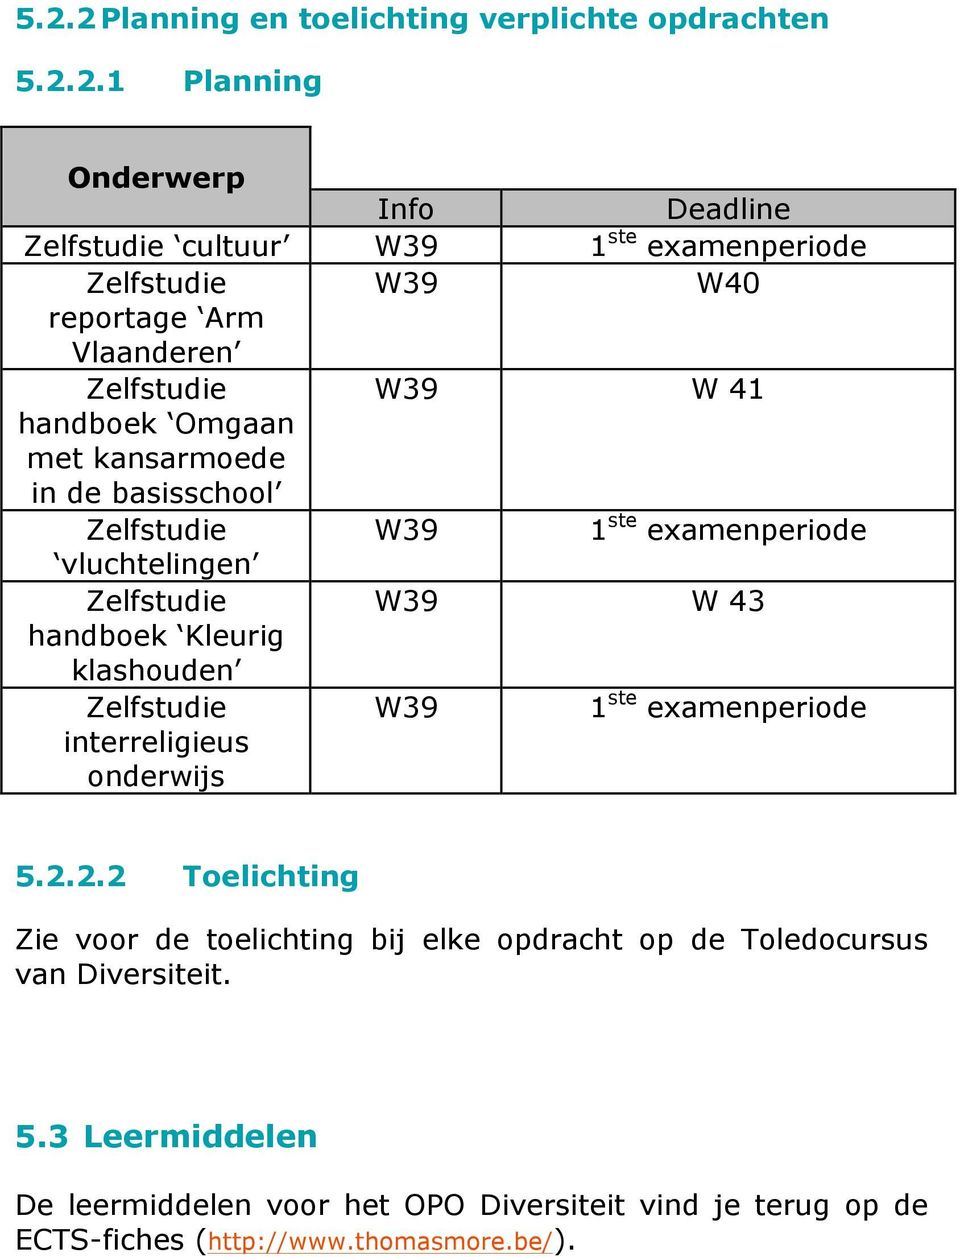 W39 W 43 handboek Kleurig klashouden Zelfstudie interreligieus onderwijs W39 1 ste examenperiode 5.2.